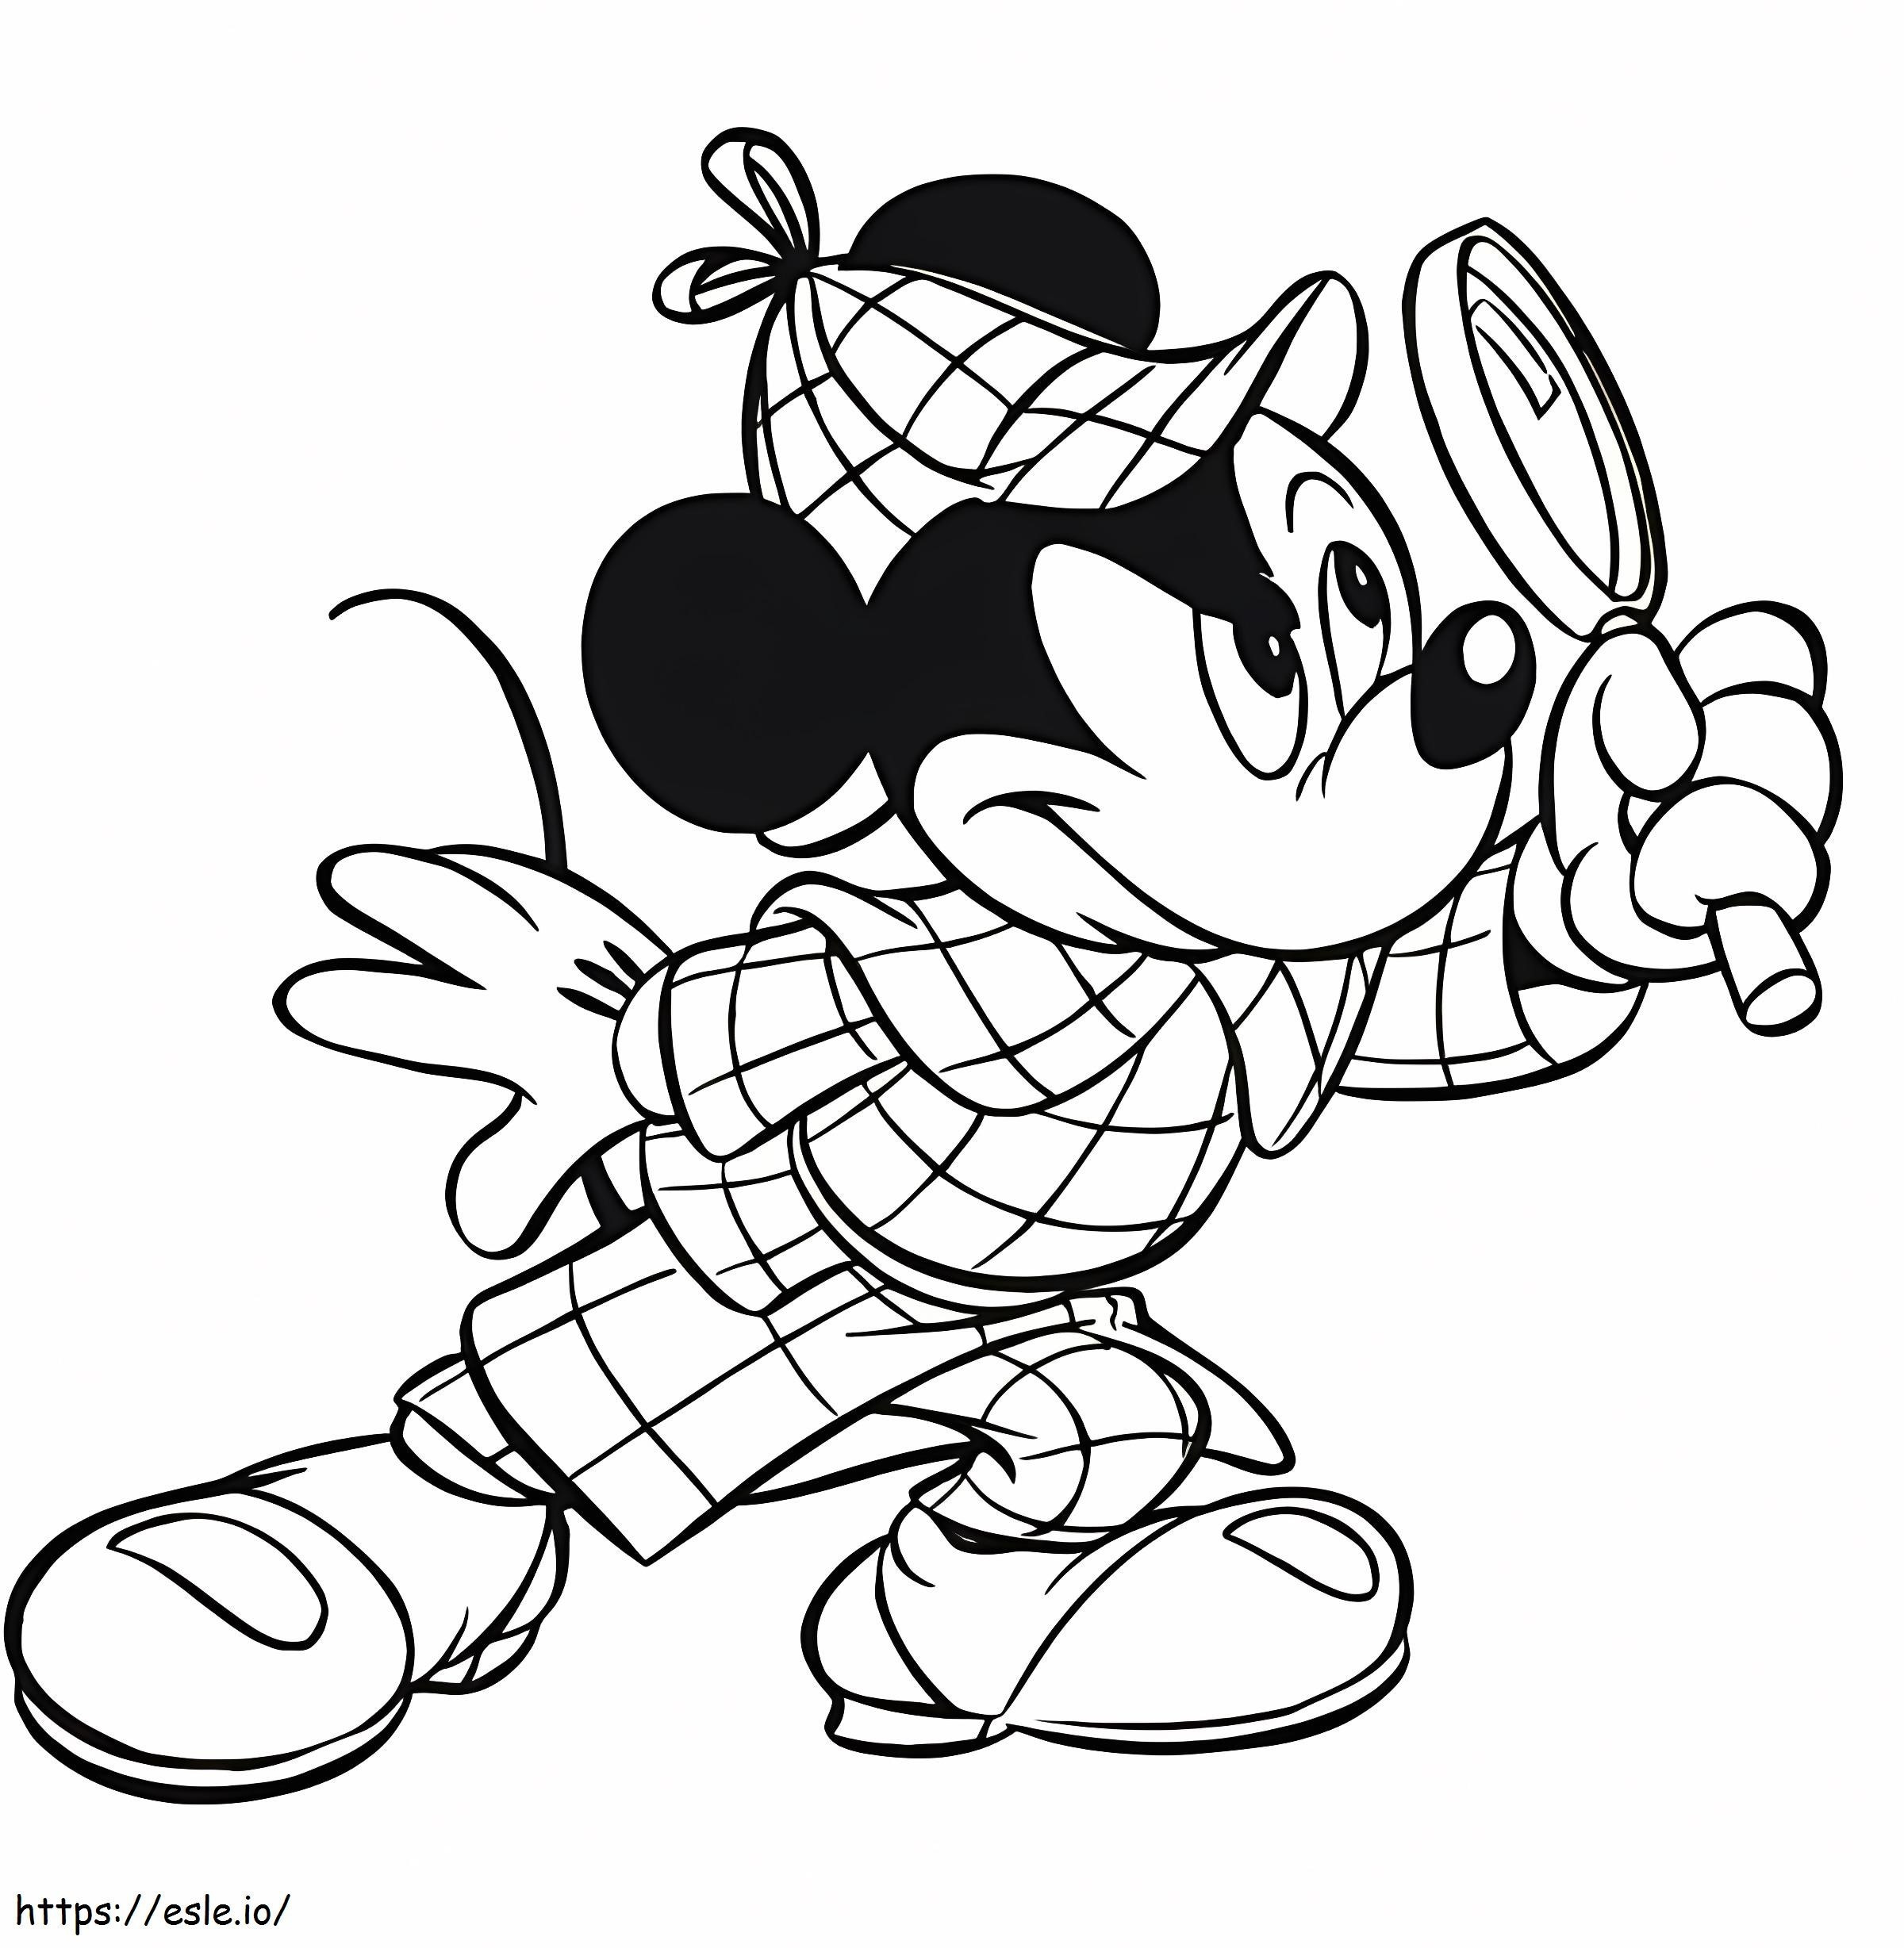 Mickey Mouse Le Detective kleurplaat kleurplaat